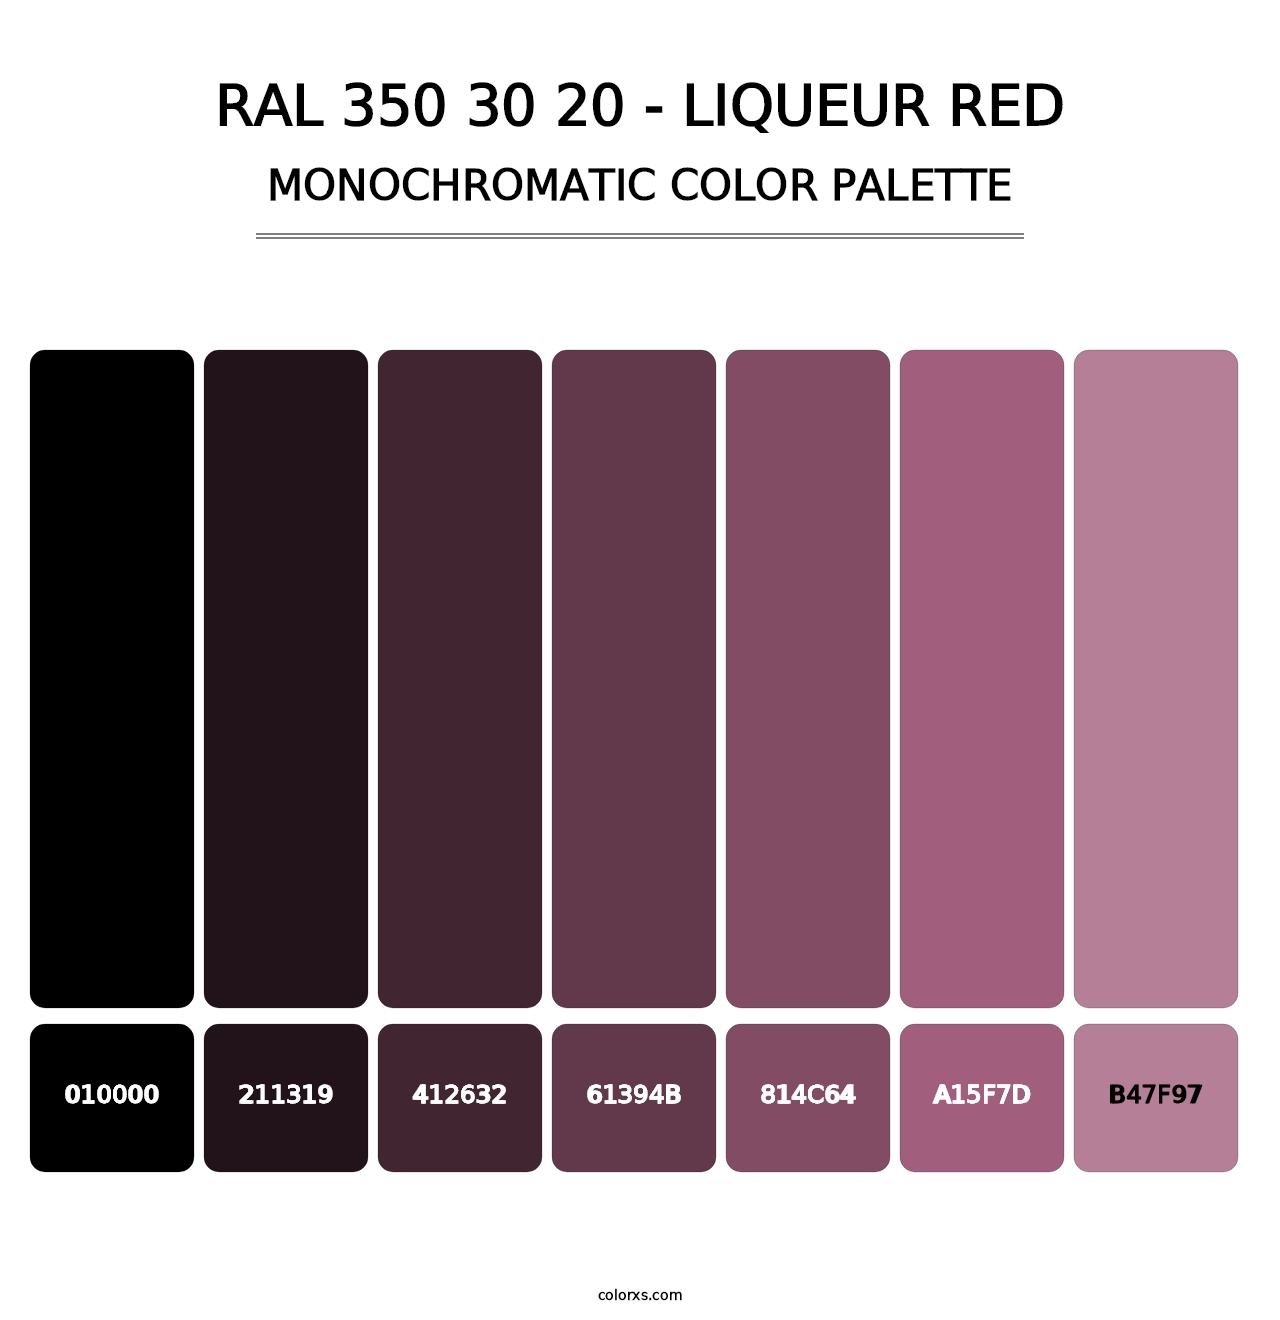 RAL 350 30 20 - Liqueur Red - Monochromatic Color Palette